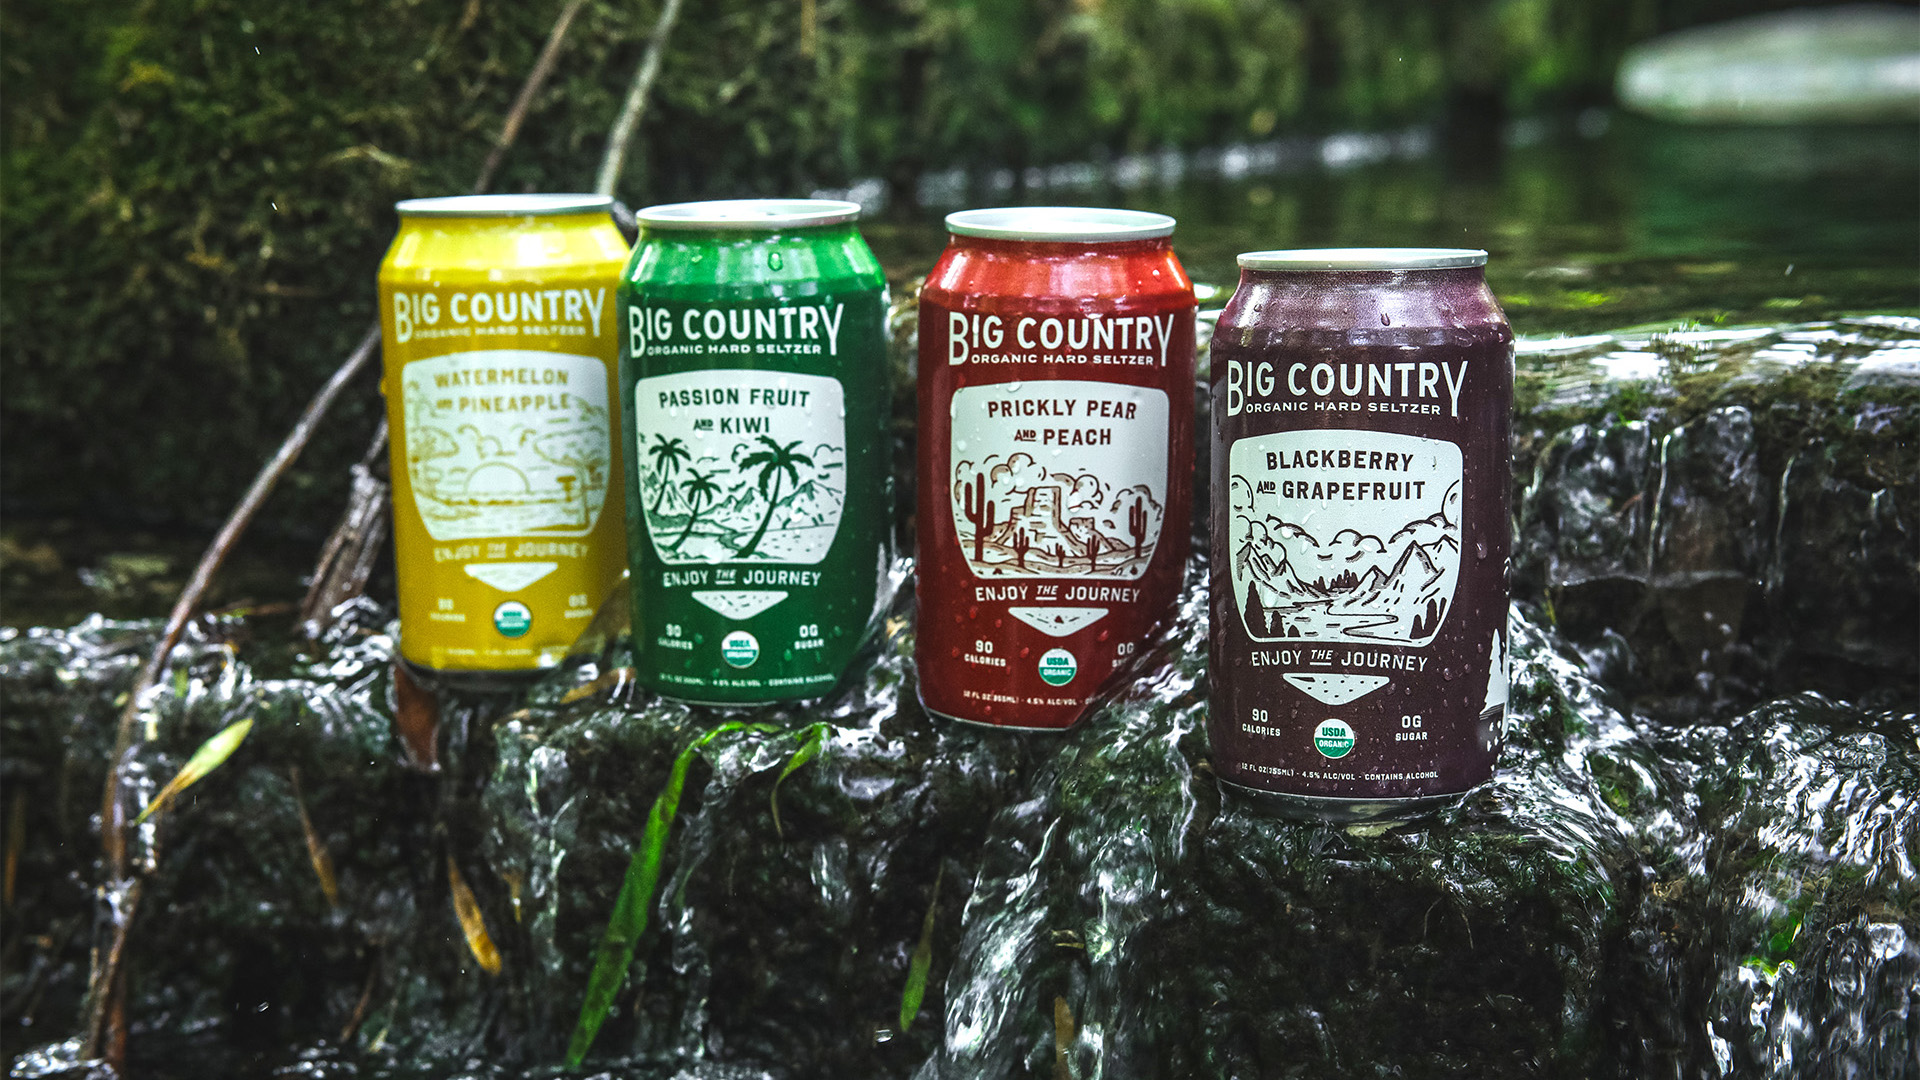 Big Country Organic Brewing Co. bruger Dropbox-produkter til at holde sig boblende på sociale medier